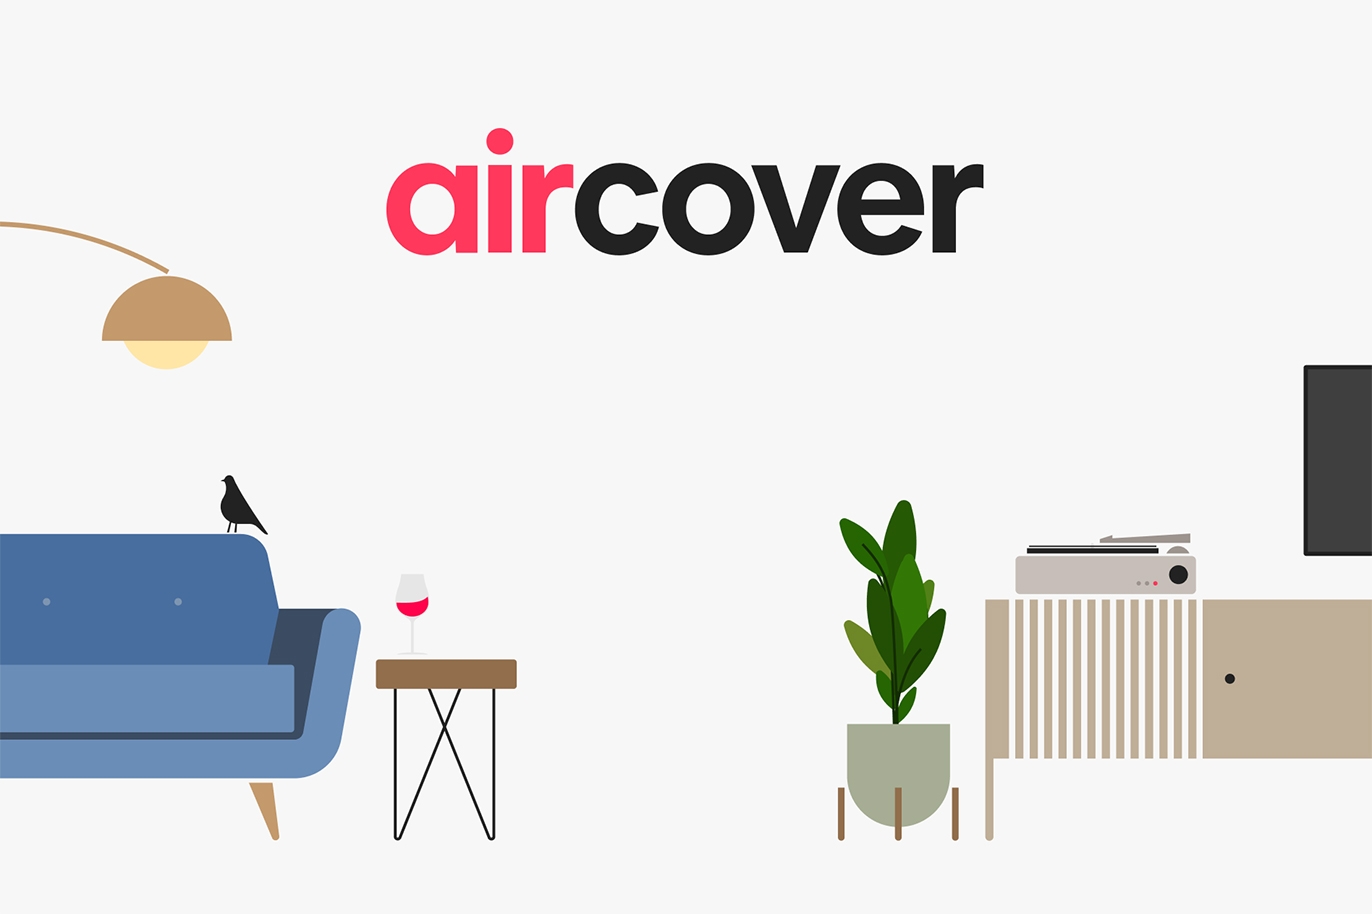 Illustration colorée et moderne d'objets courants dans une maison sur un fond blanc abstrait, de meubles aux plantes de maison, en passant par l'électronique, avec le mot AirCover au centre.